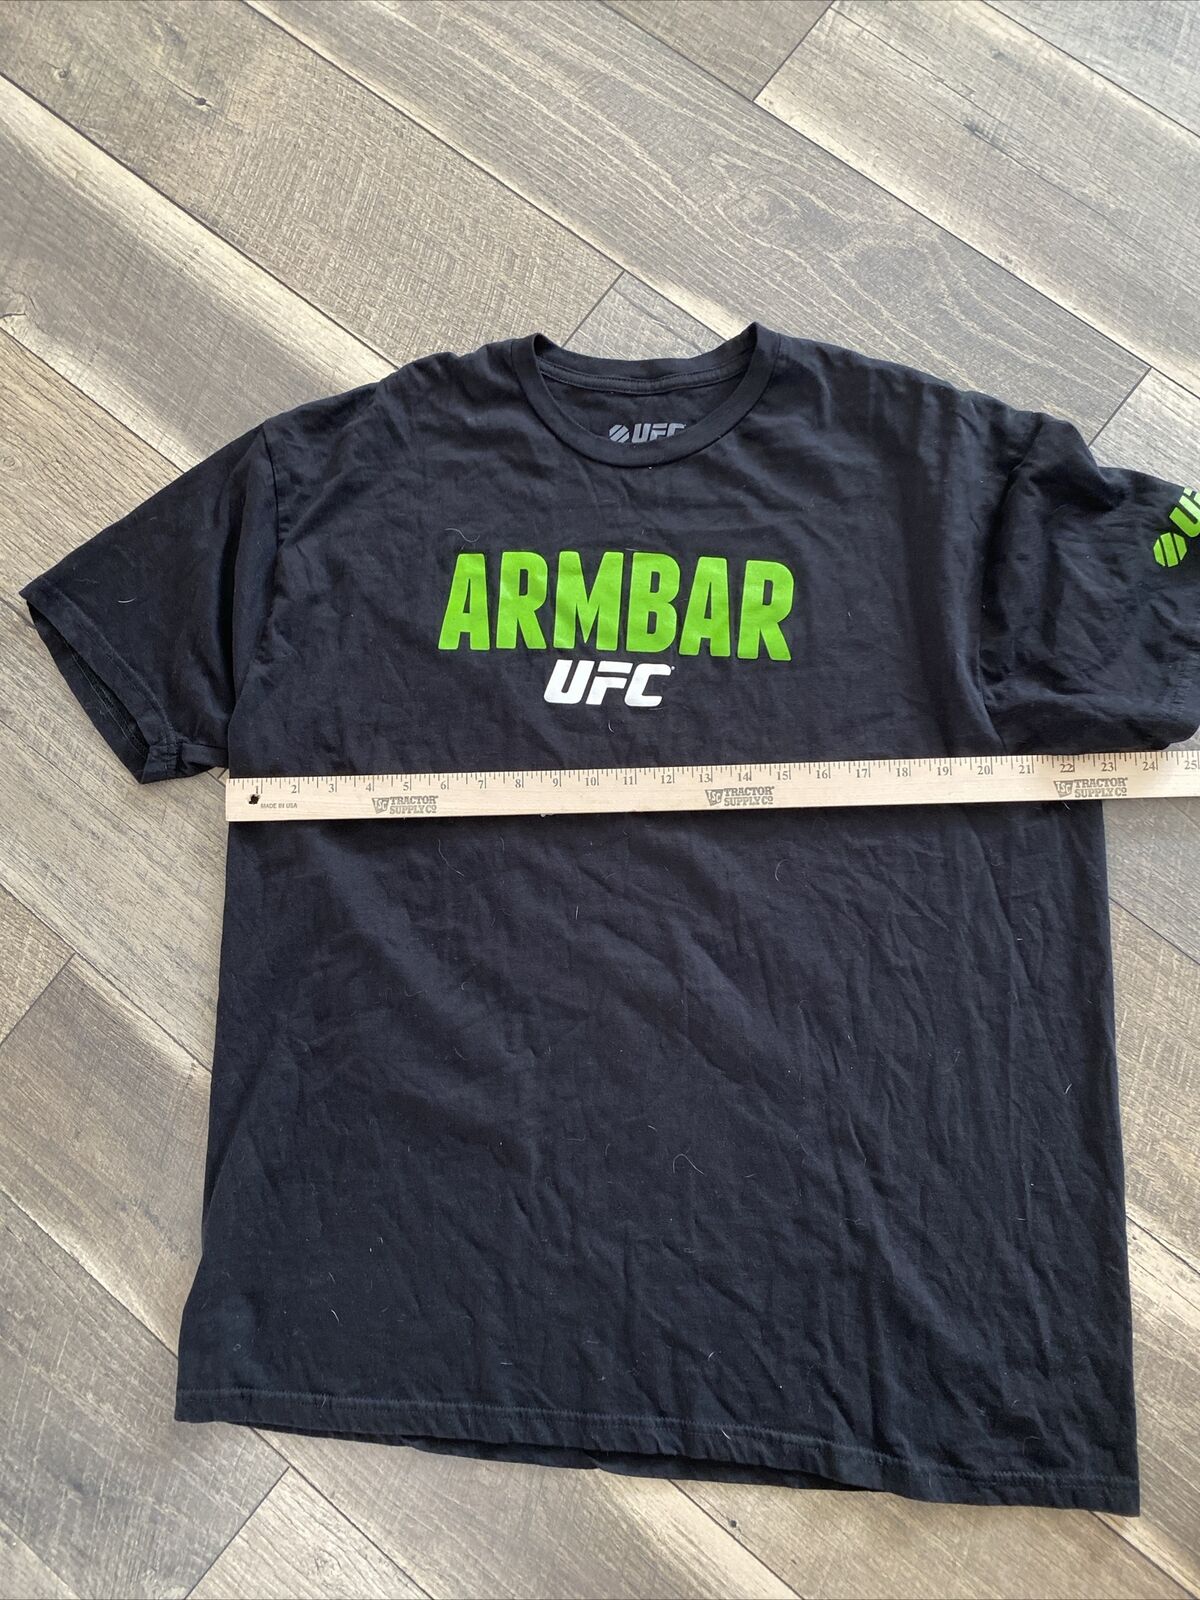 UFC Armbar MMA XL Black UFC T-Shirt - image 3